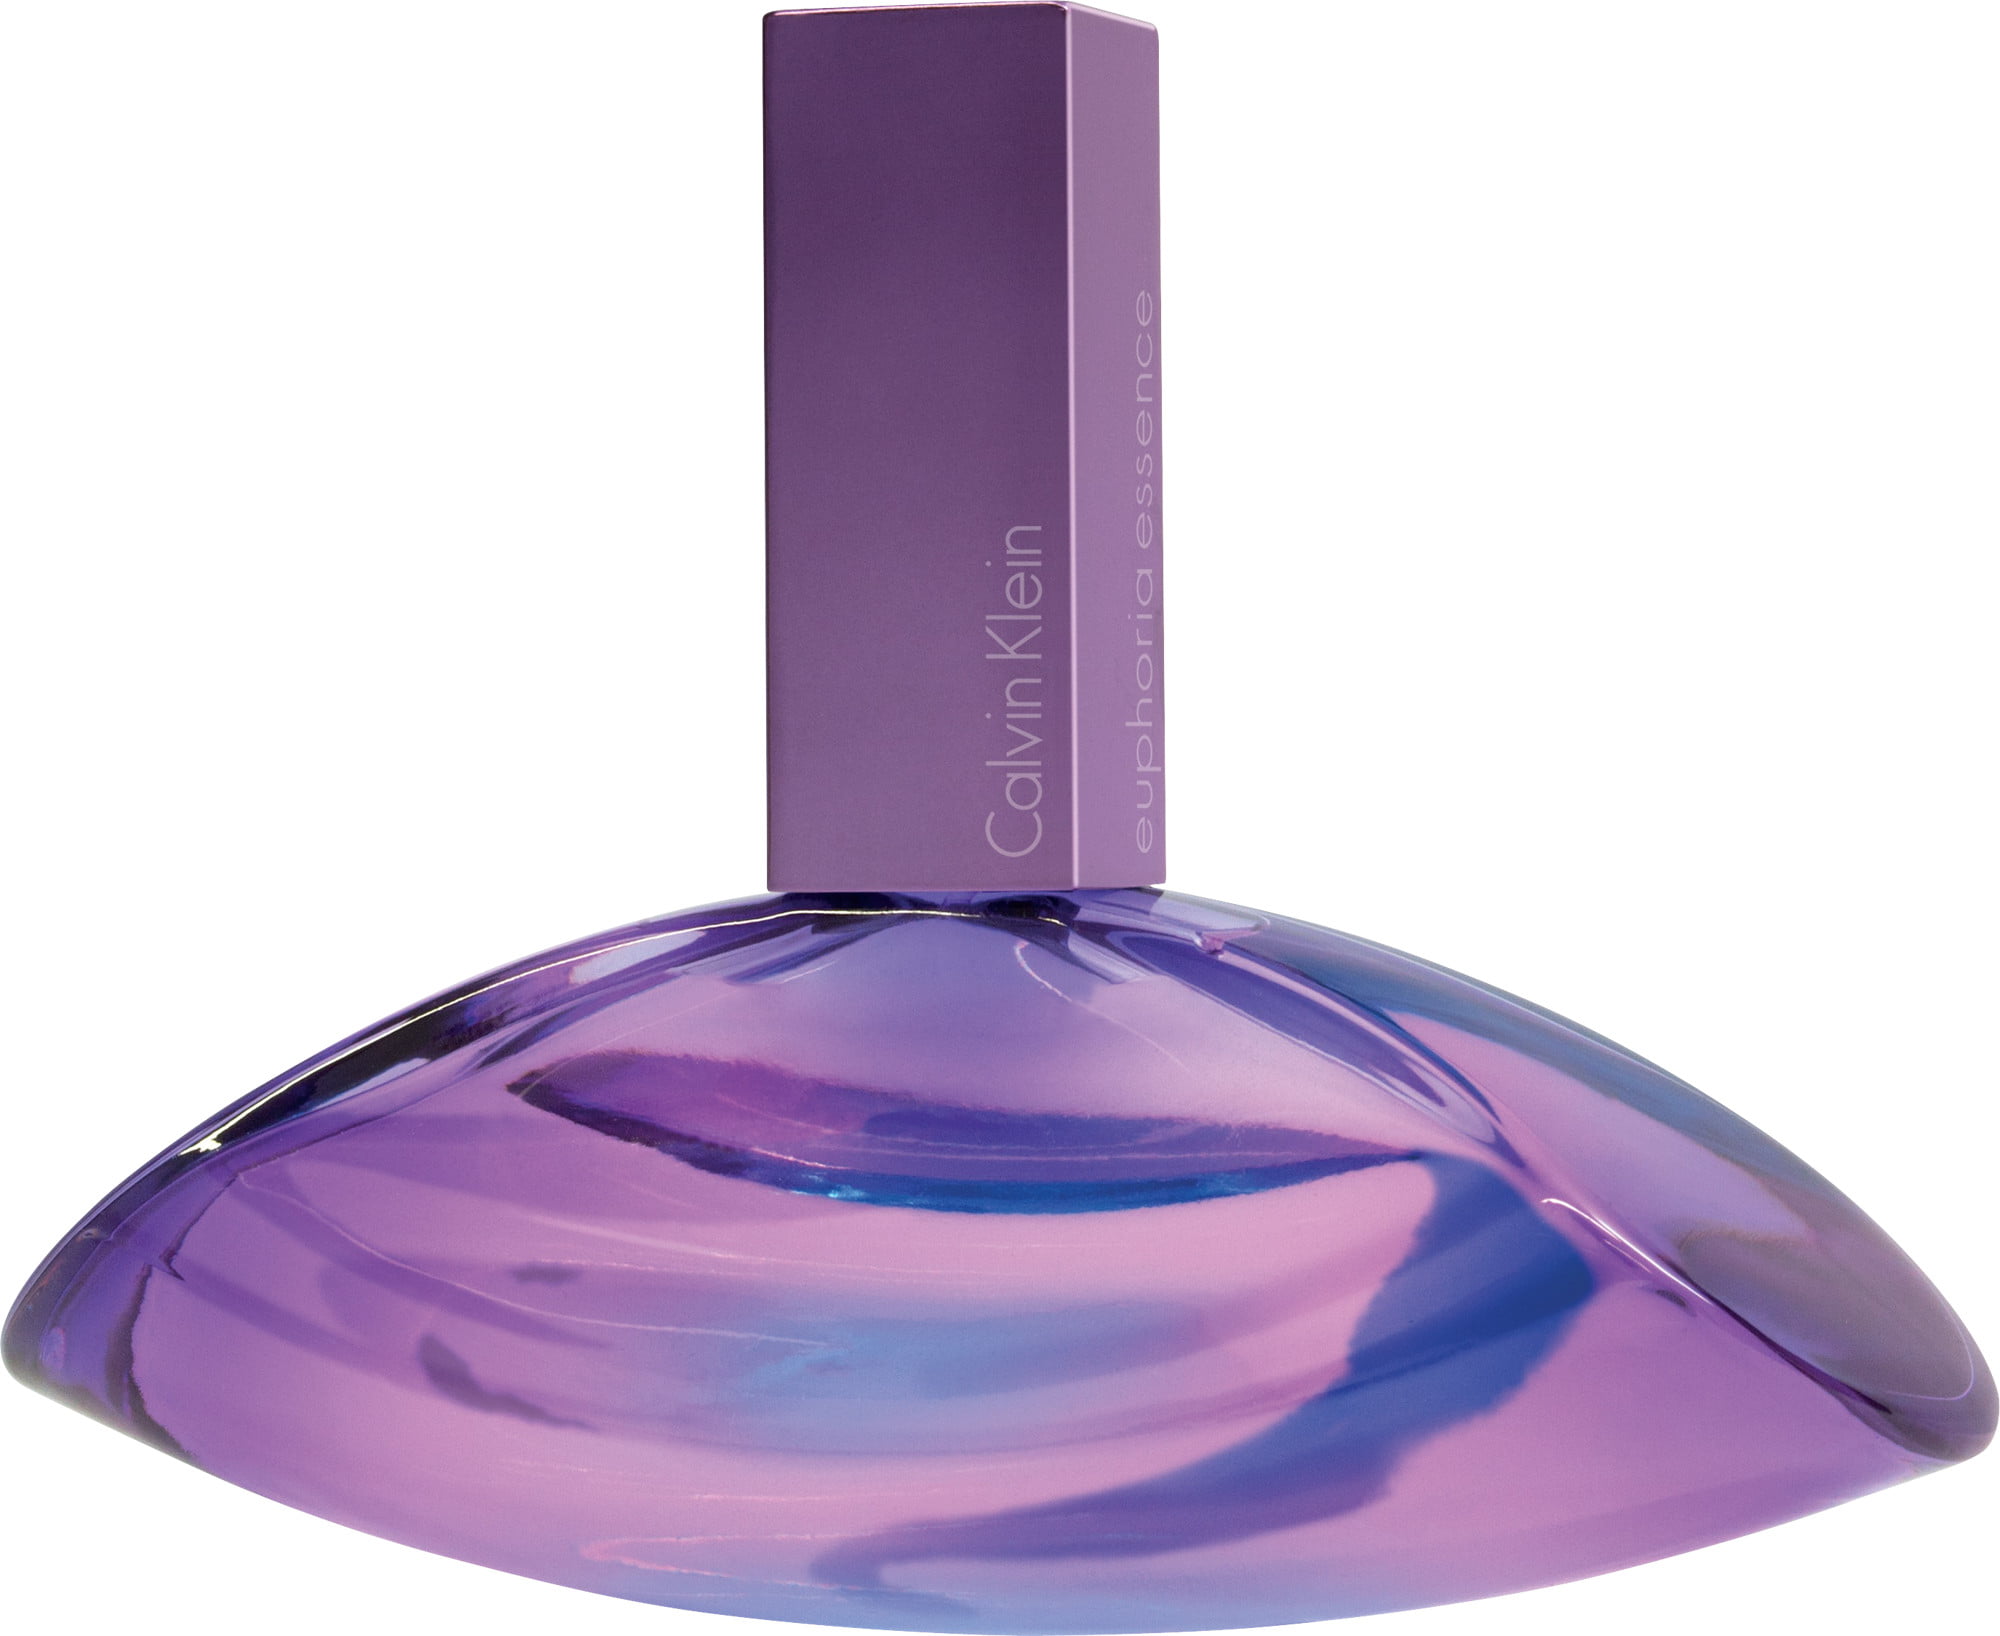 Coach Floral Eau The Parfum Perfume Gift Set for Women, 3 Pieces -  